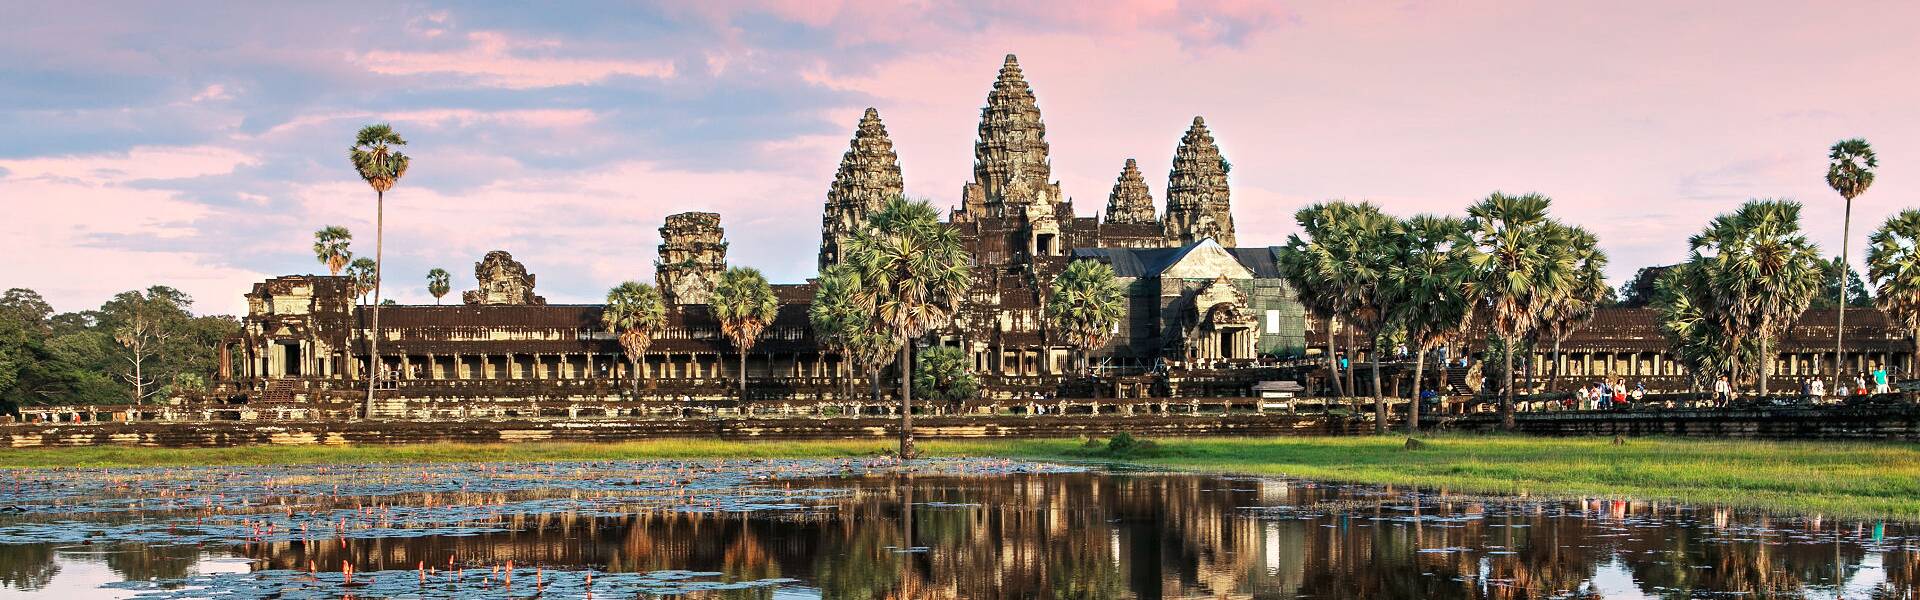 Erleben Sie die faszinierende Tempelanlage Angkor Wat in Kambodscha auf einer unvergesslichen Reise